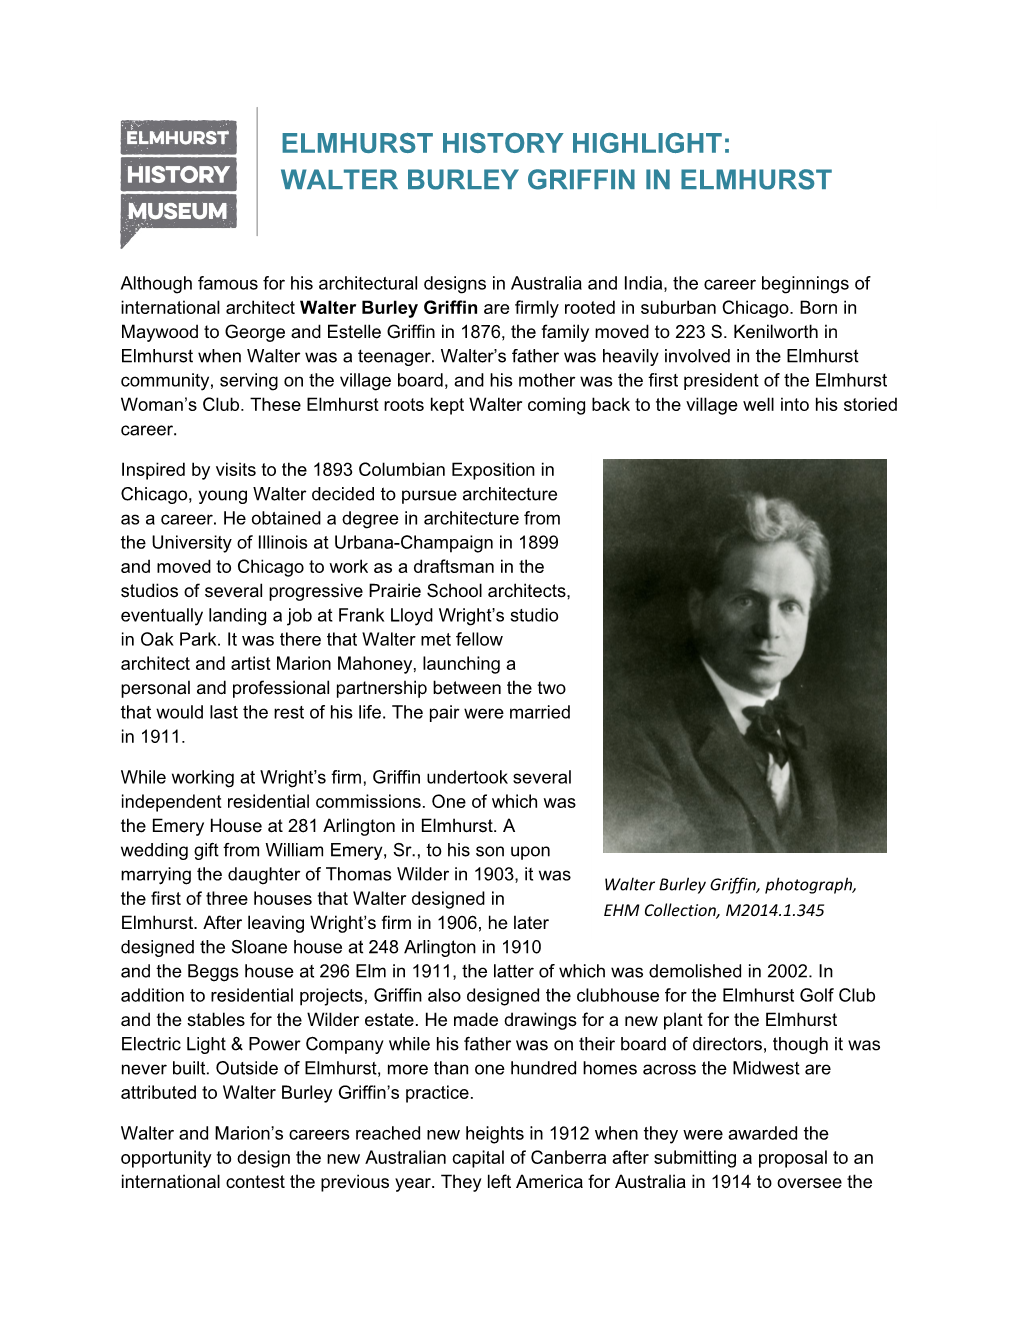 Walter Burley Griffin in Elmhurst